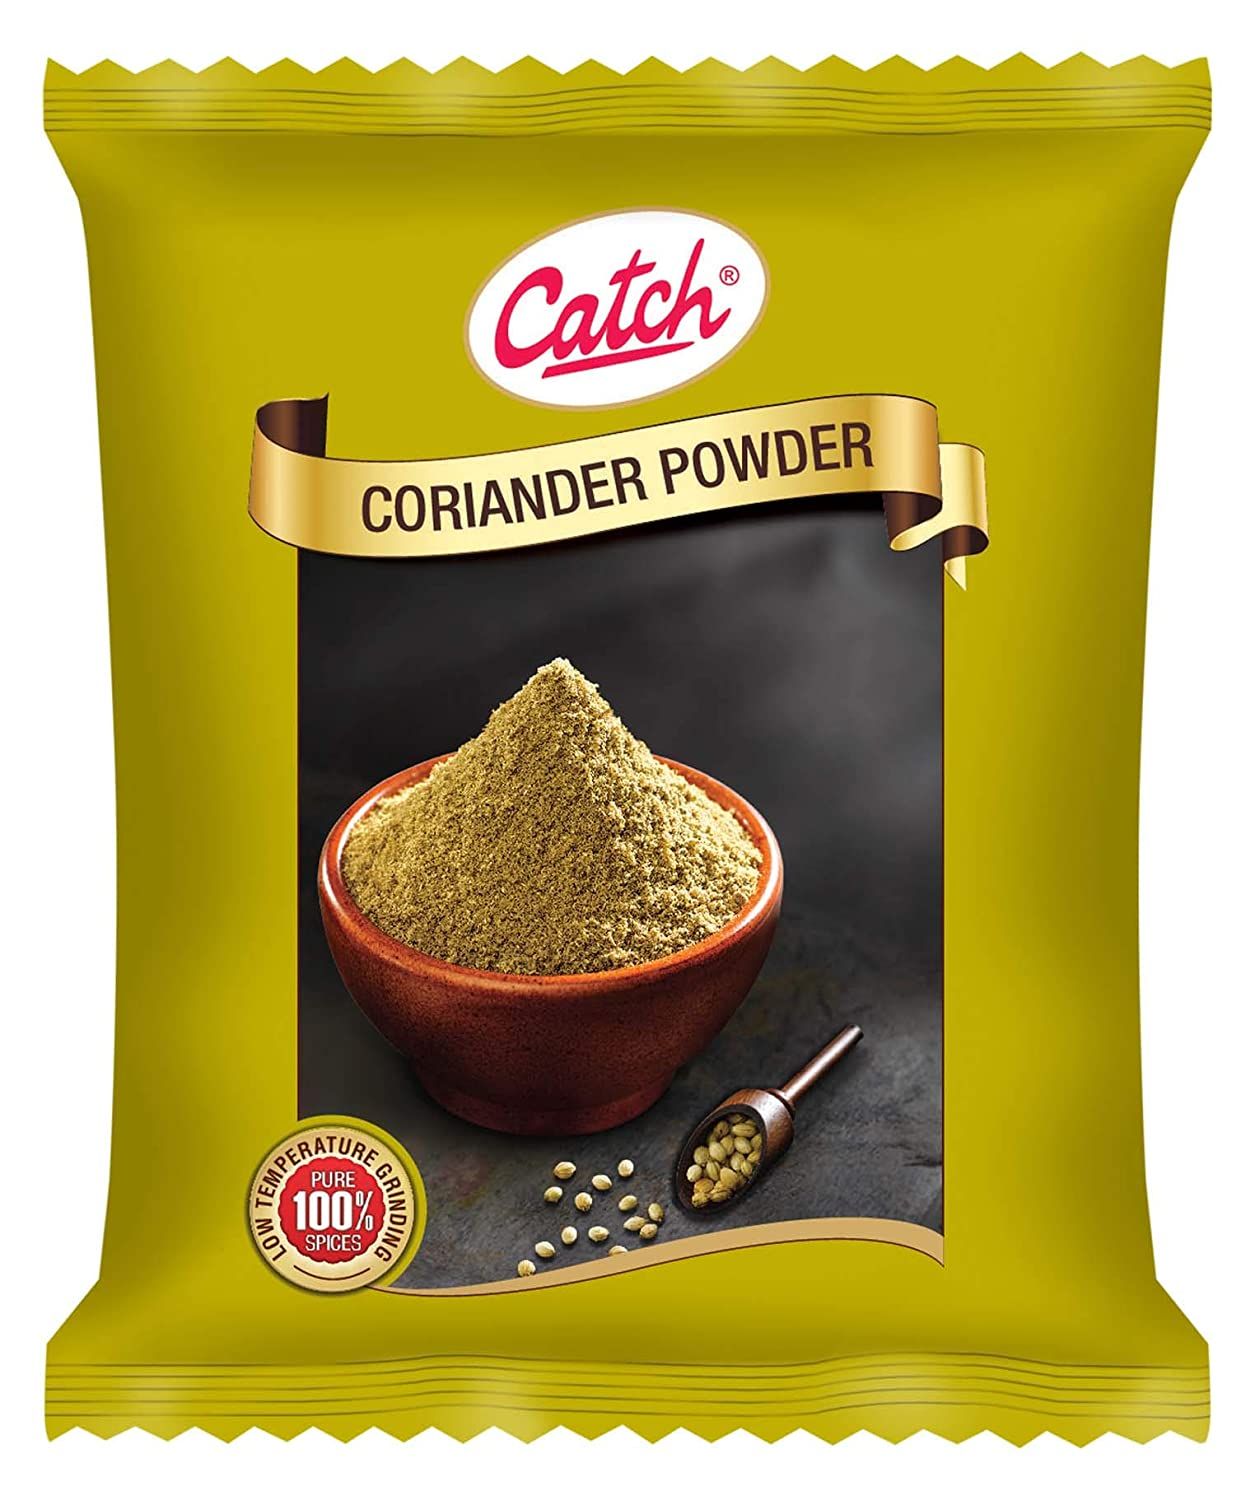 Catch Coriander Powder Image